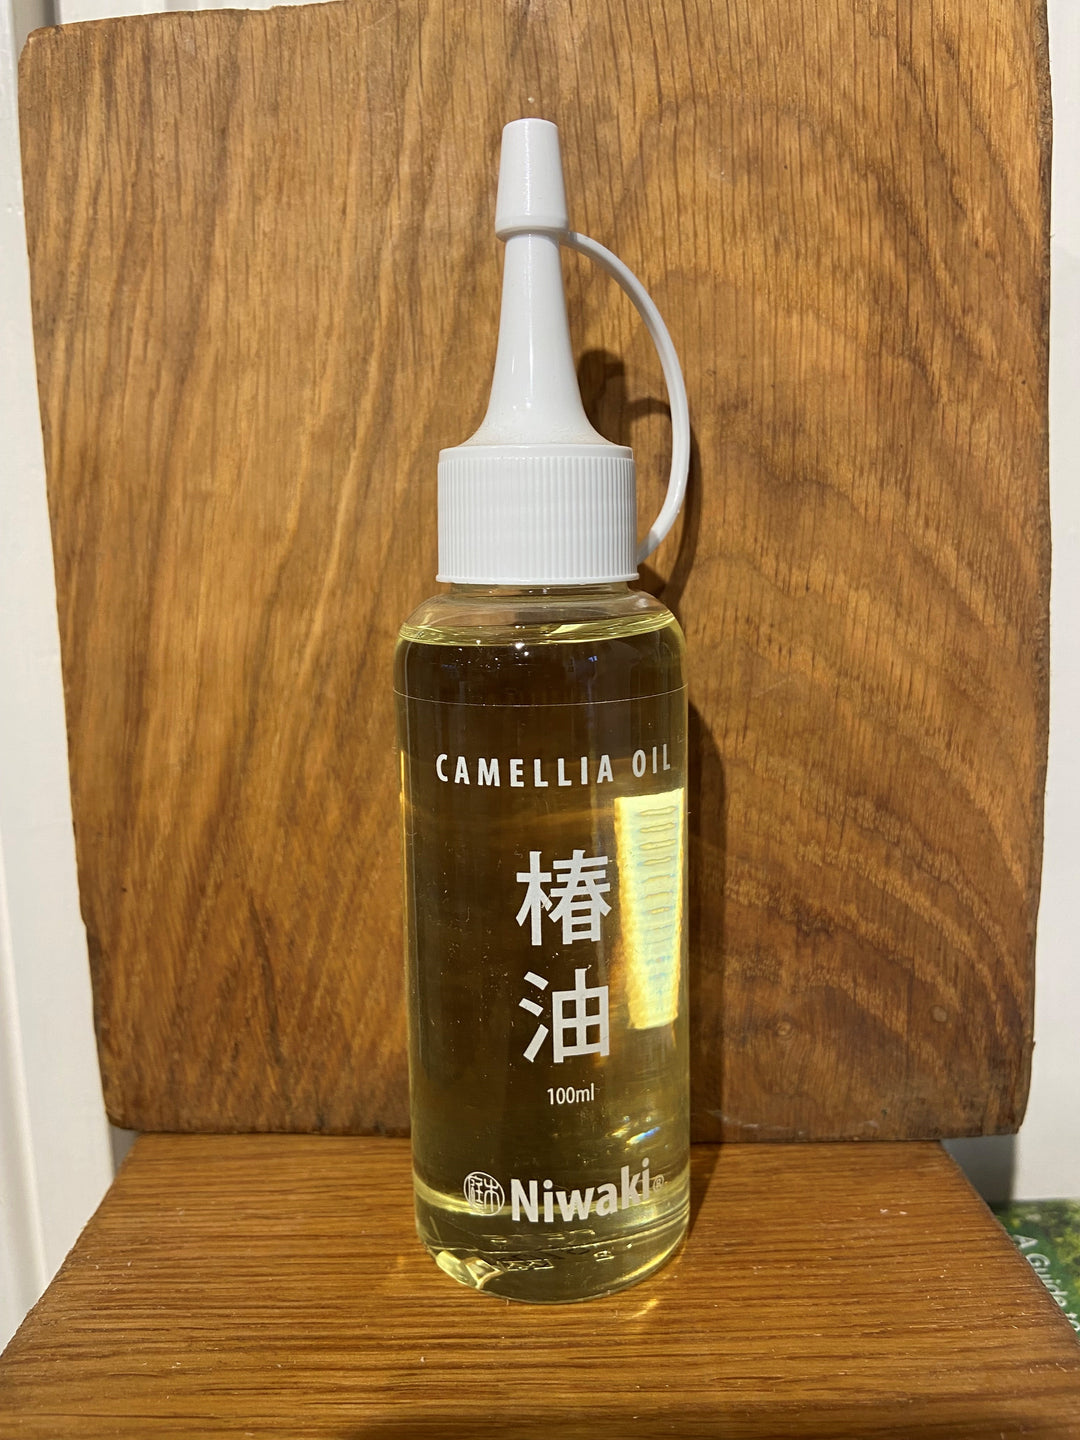 Niwaki Camellia Tool Oil